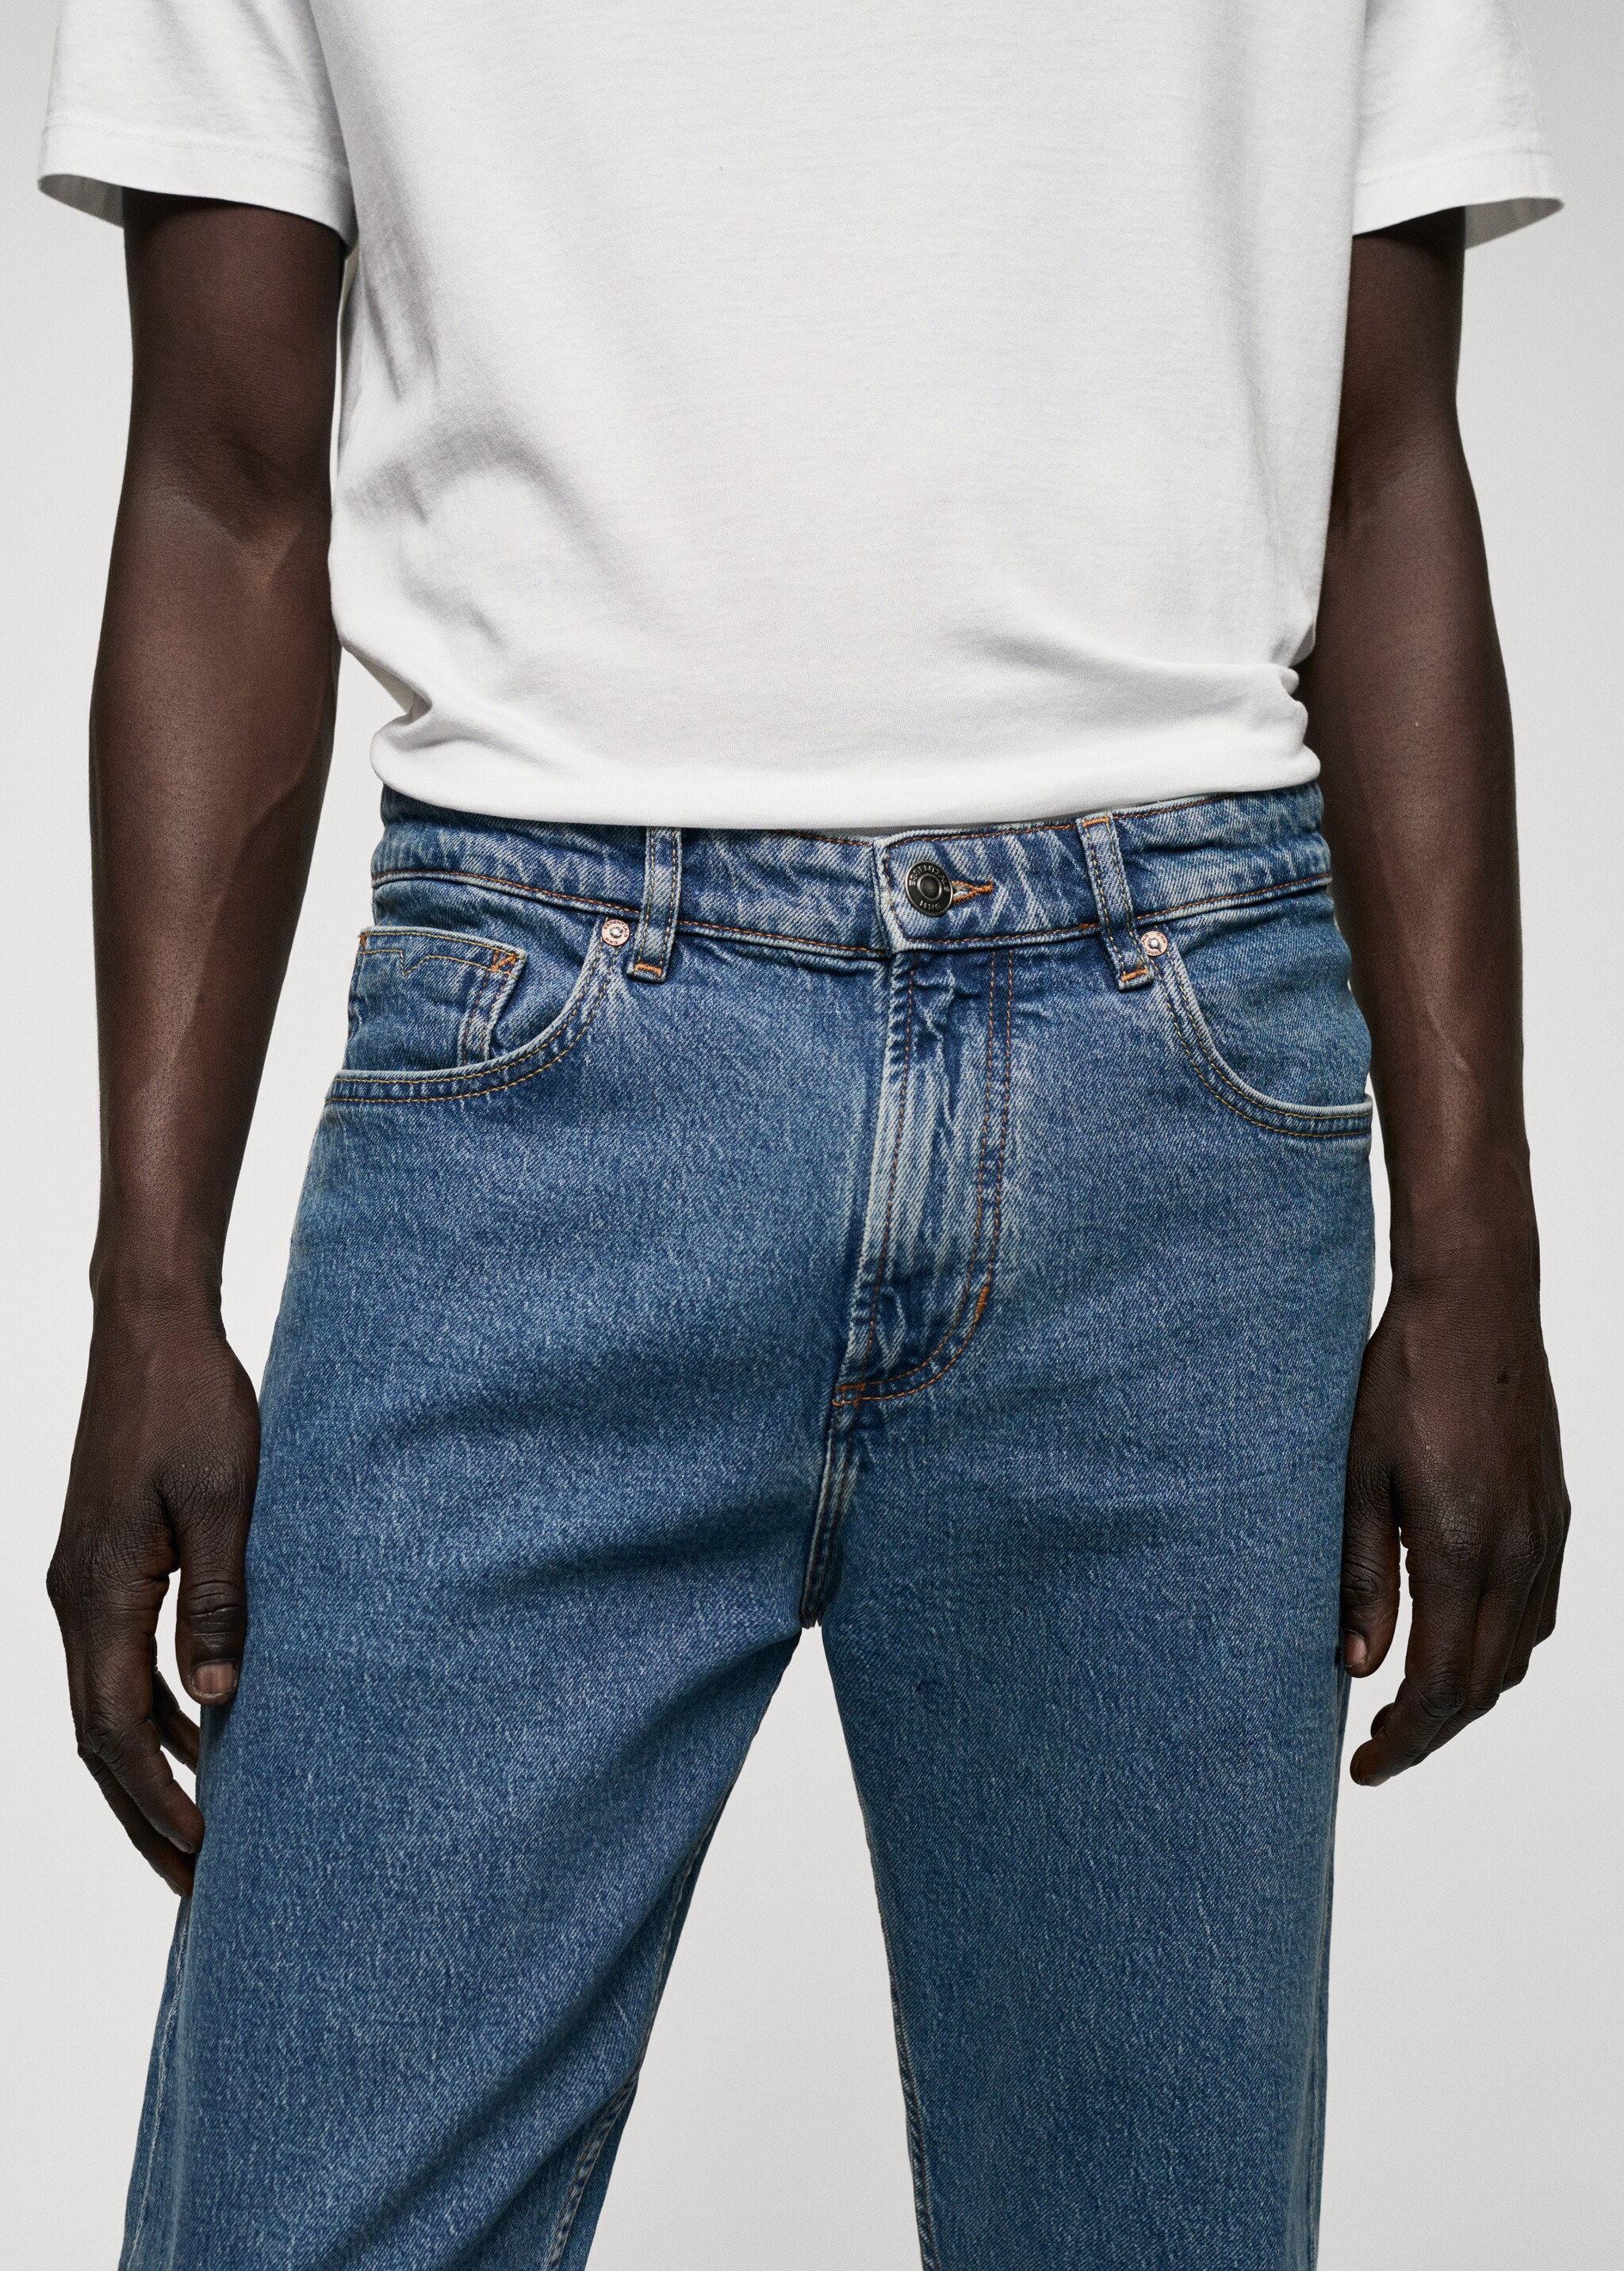 Jeans Ben tapered cropped - Artikkeldetalj 1